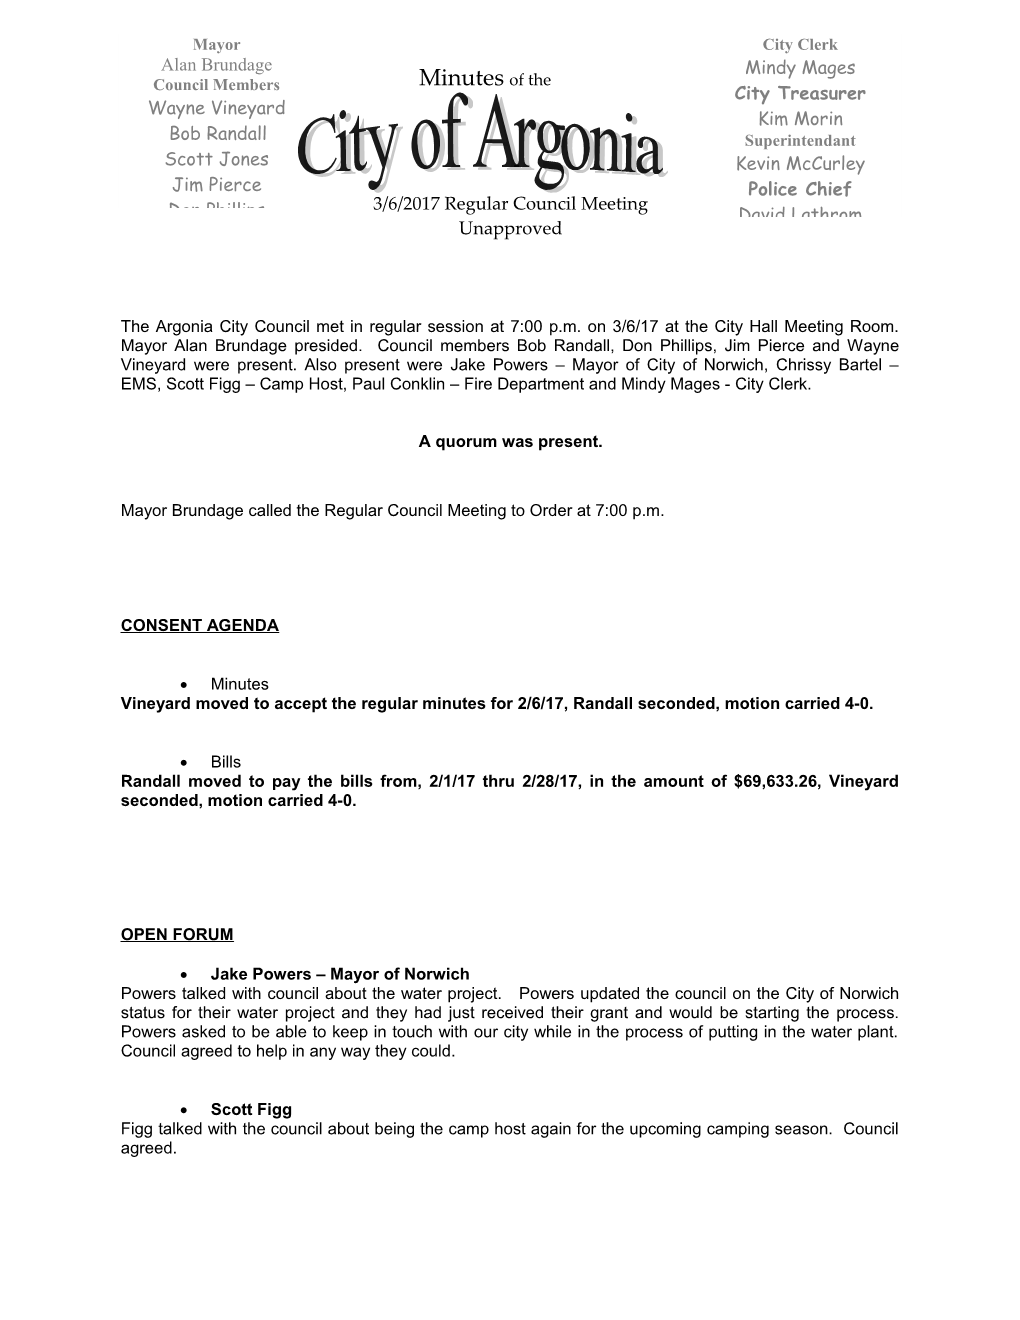 Argonia City Council Minutes